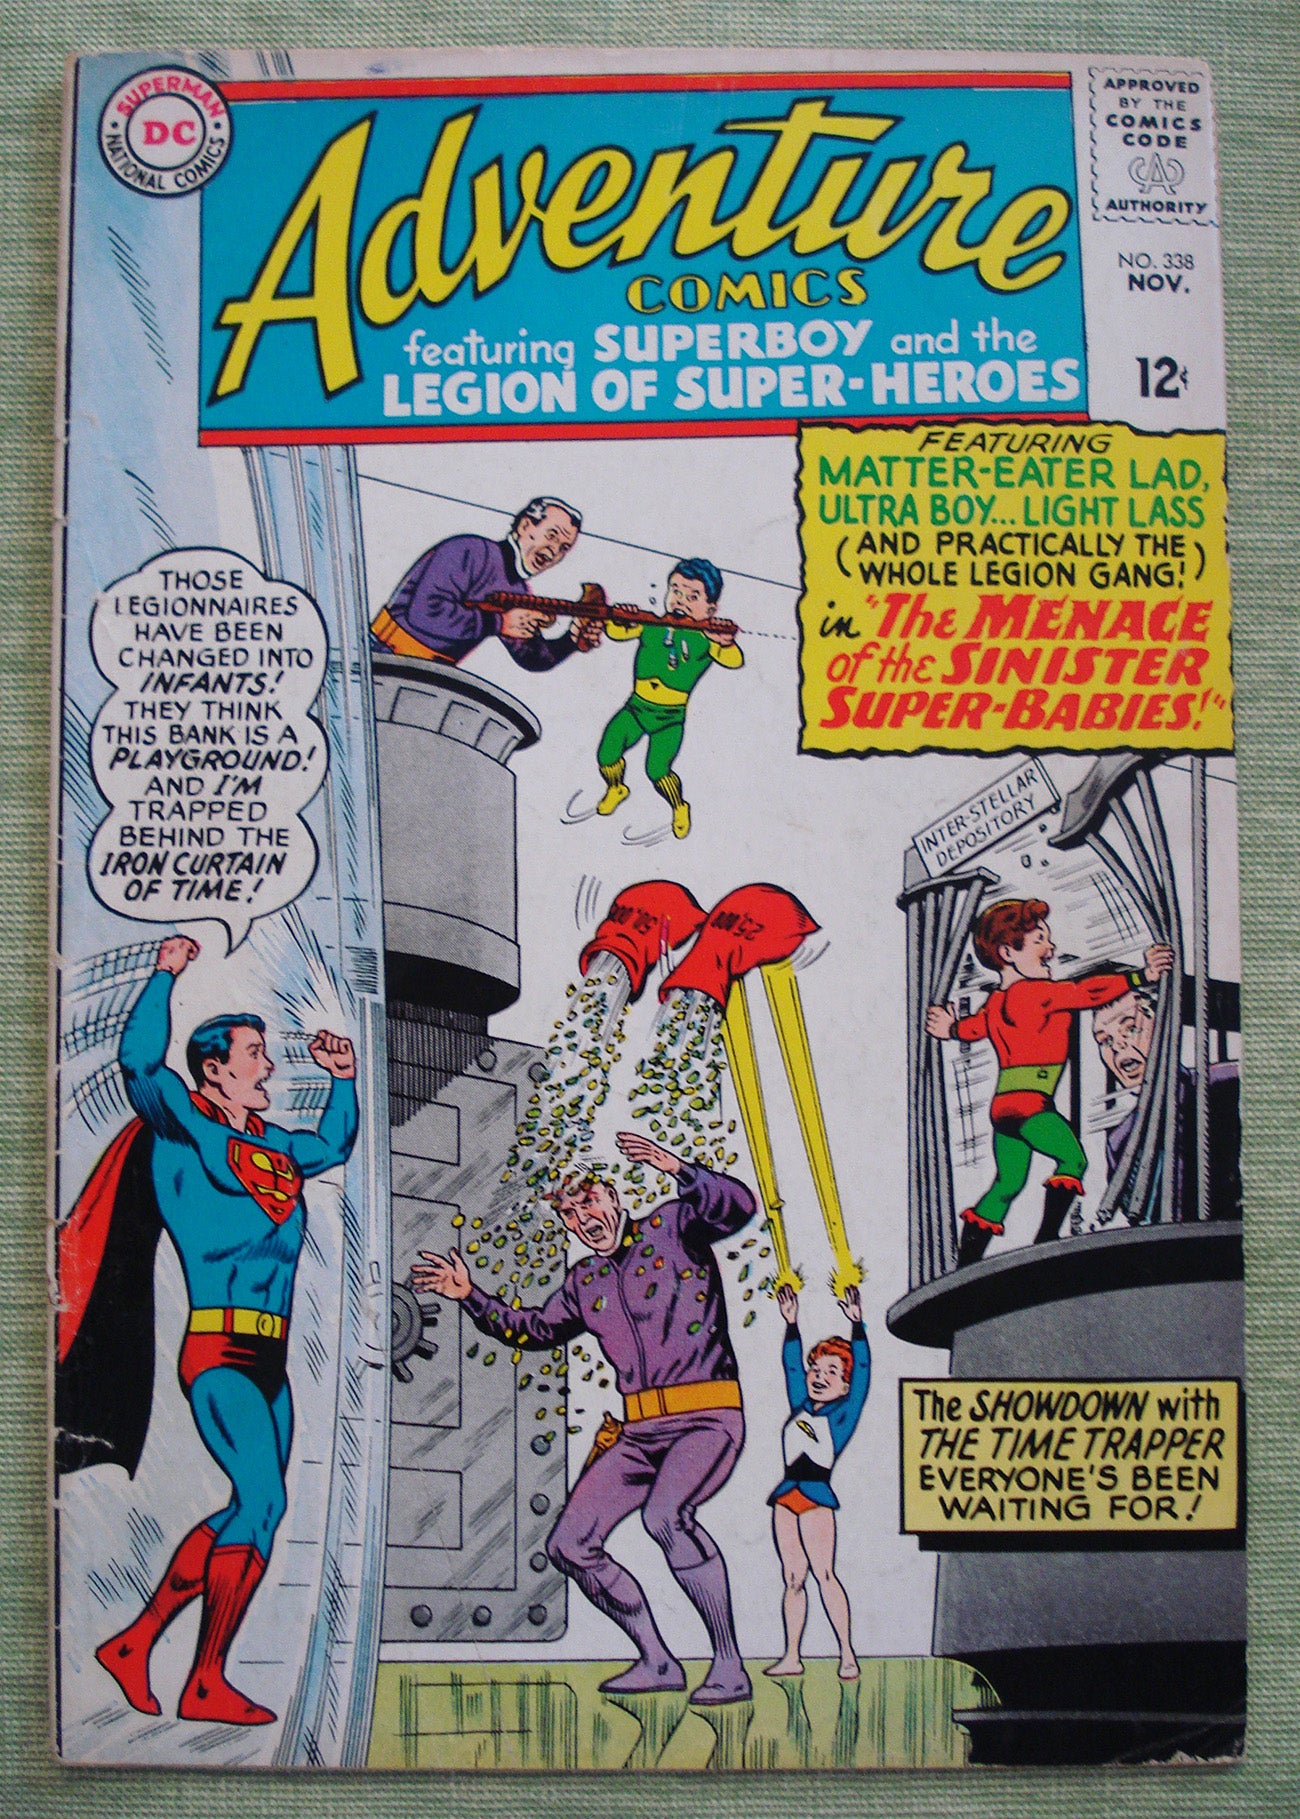 Adventure Comics #338 DC Comics November 1965